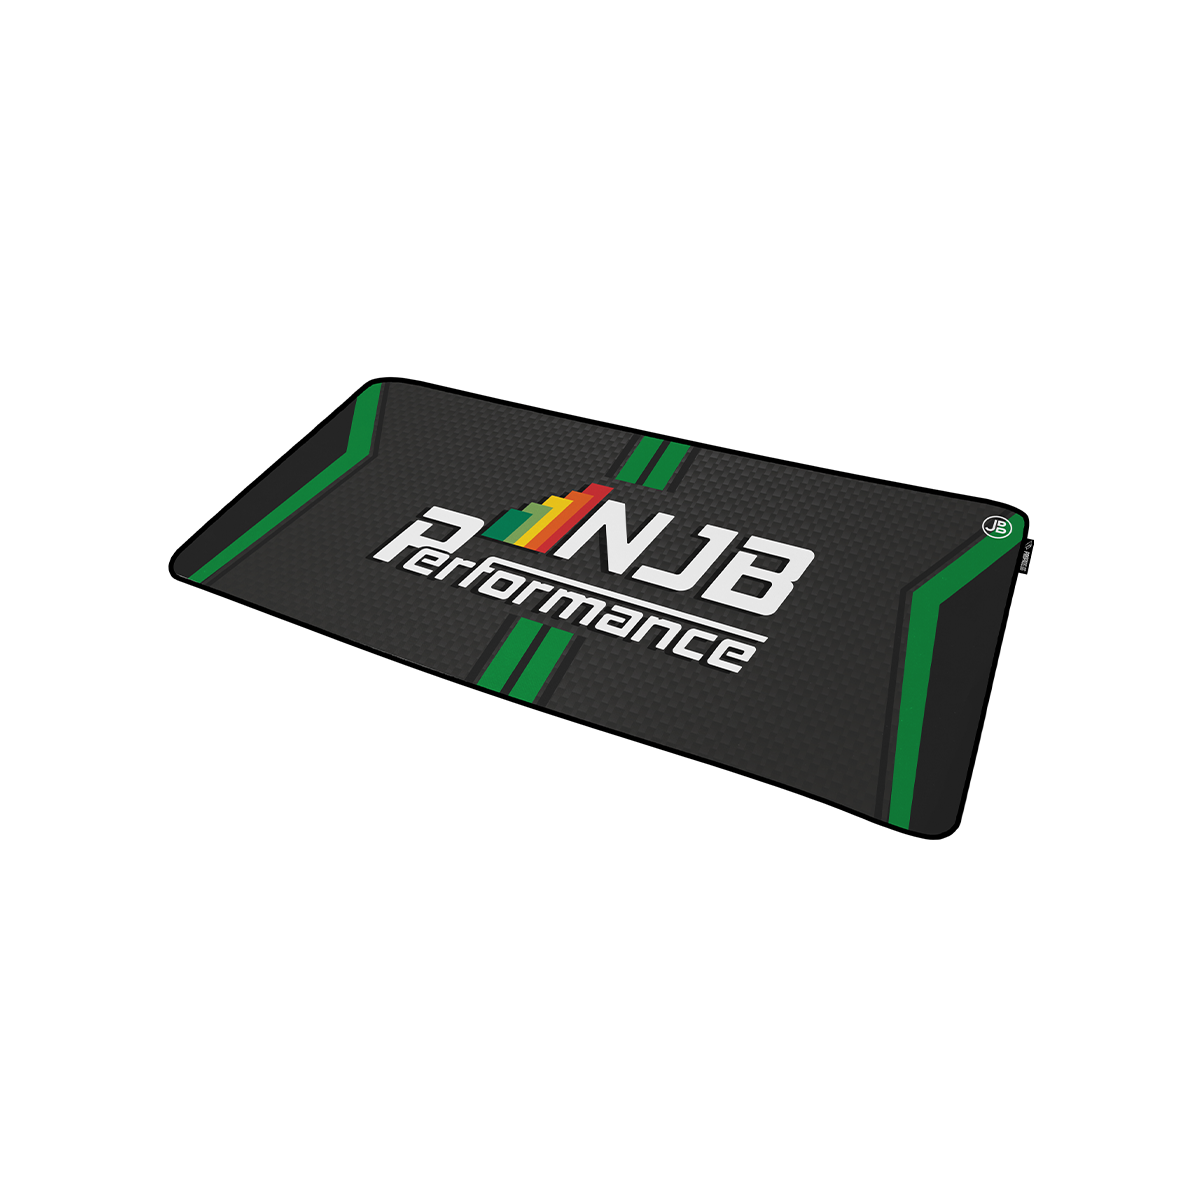 NJB PERFORMANCE - Mousepad - XXL